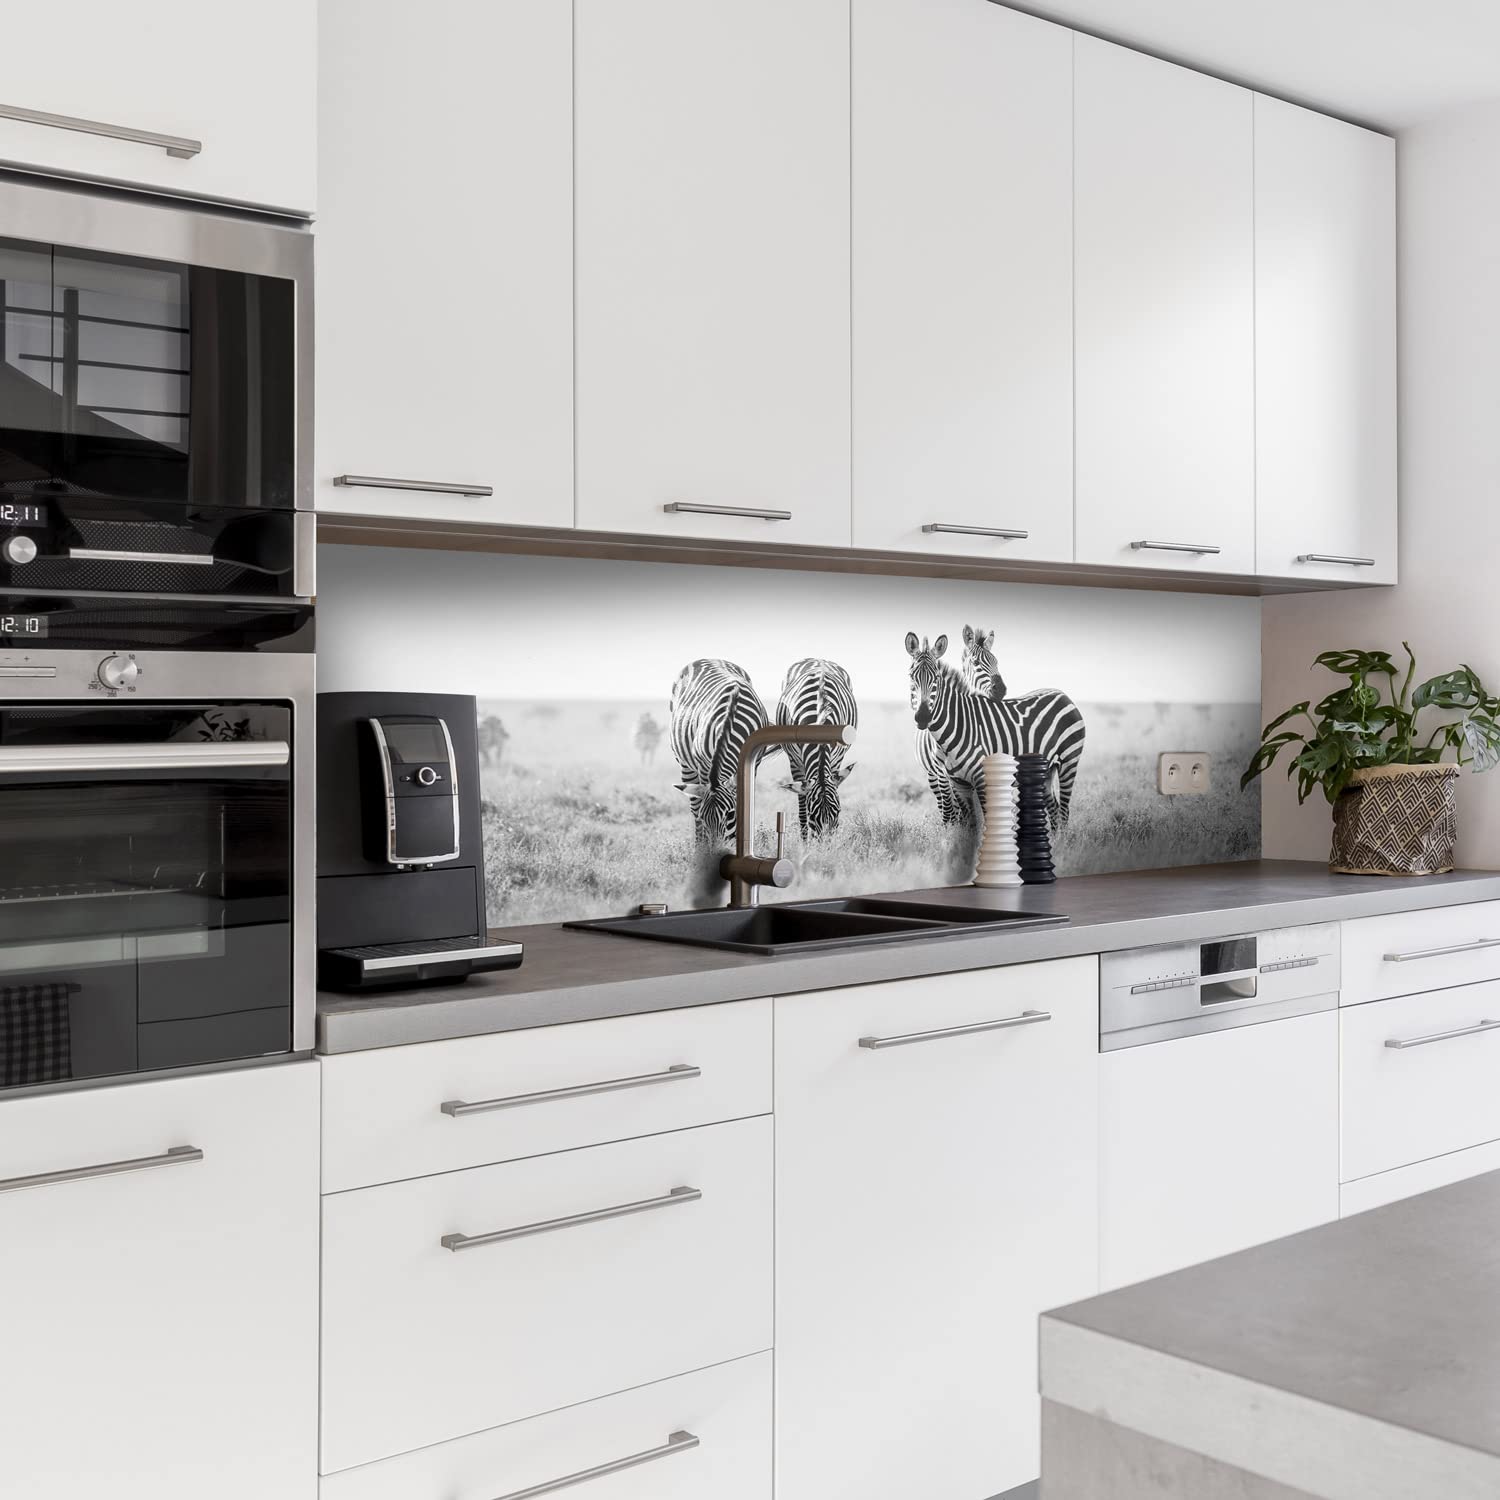 Dedeco Küchenrückwand Motiv: Tierwelt V3, 3mm Aluminium Alu-Platten als Spritzschutz Küchenwand Verbundplatte wasserfest, inkl. UV-Lack glänzend, alle Untergründe, 220 x 60 cm